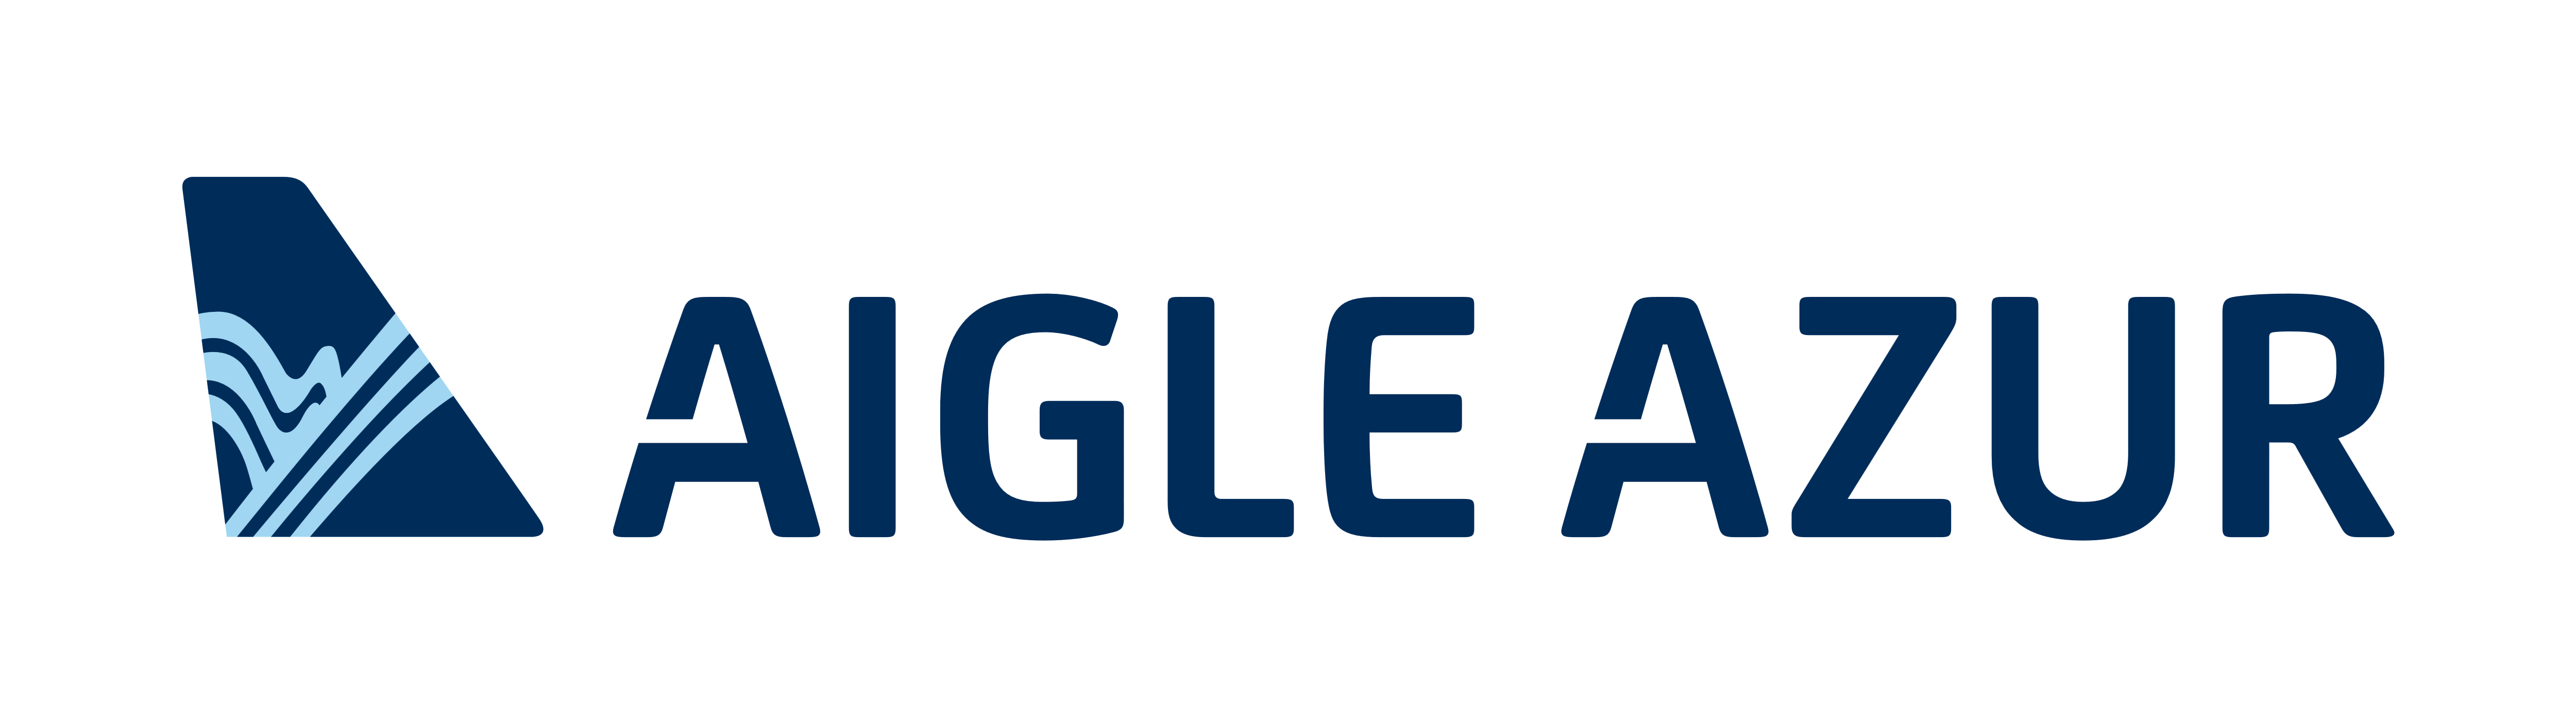 Aigle Azur Logos Download